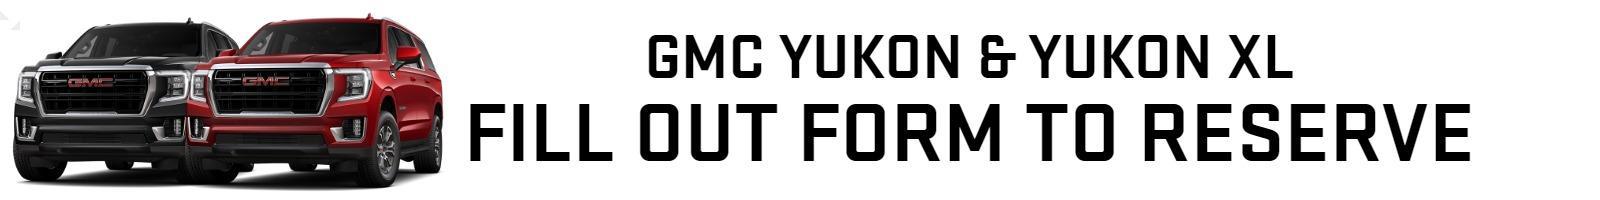 GMC Yukon and Yukon XL